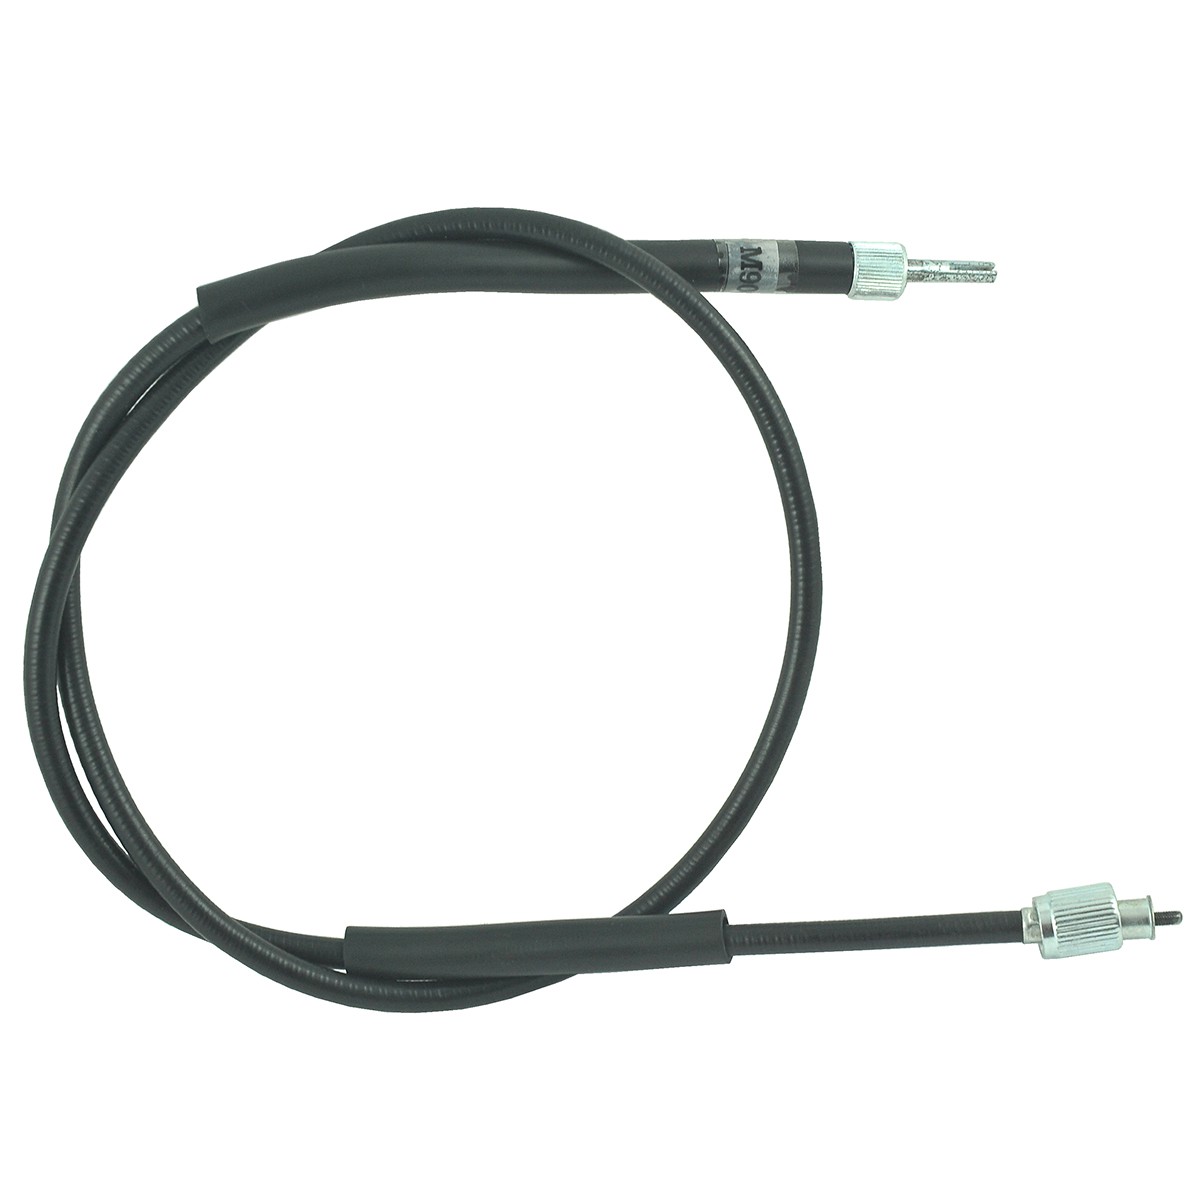 Counter cable / 1050 mm / Kubota L1802/L2002/L2202/L2402/L2602/L2850/L2900/L3010/L3250/L3300/M6800/M8200/M9000 / 38240-34655